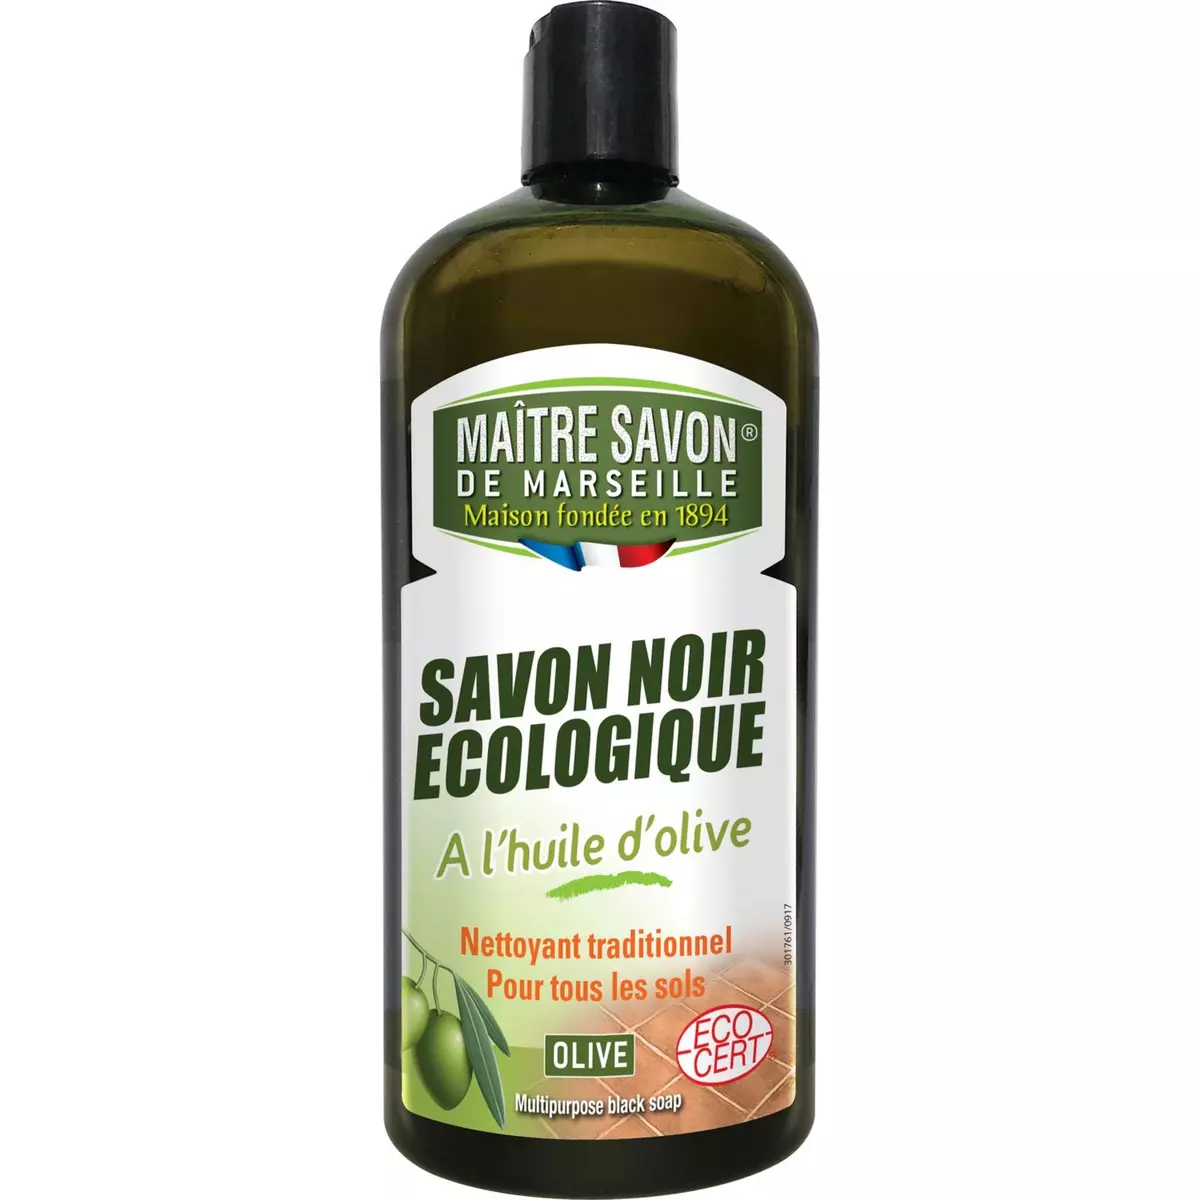 MAITRE SAVON Savon noir écologique à l'huile d'olive 1l